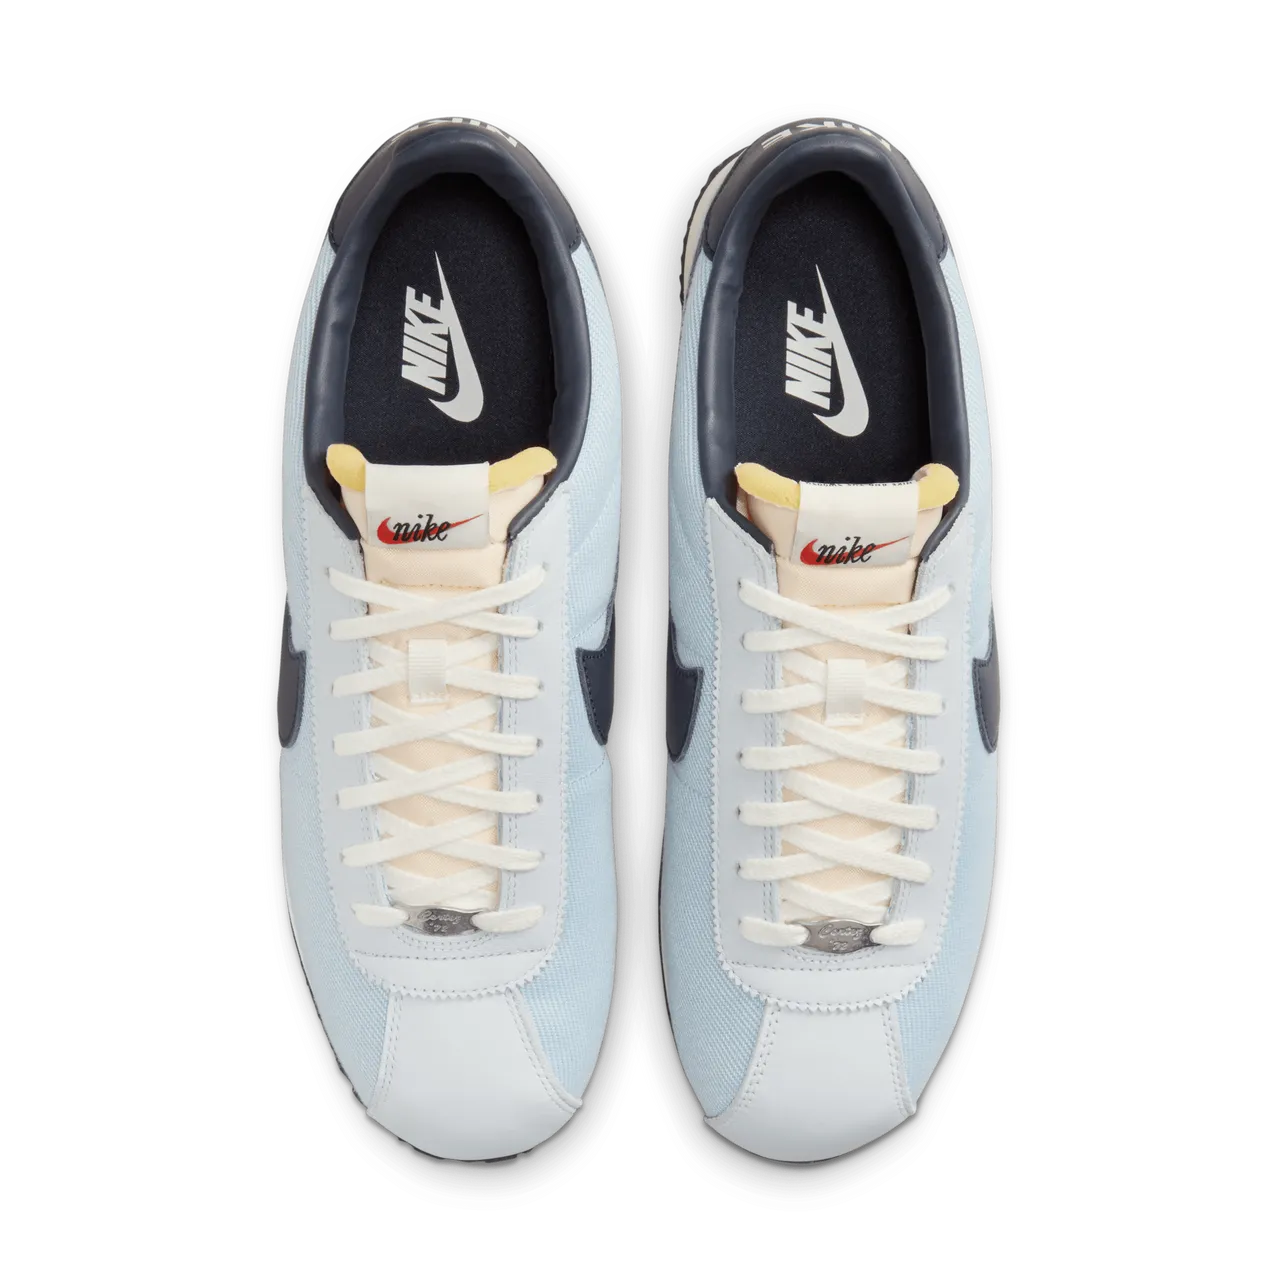 Nike Cortez Men's Shoes - Blue